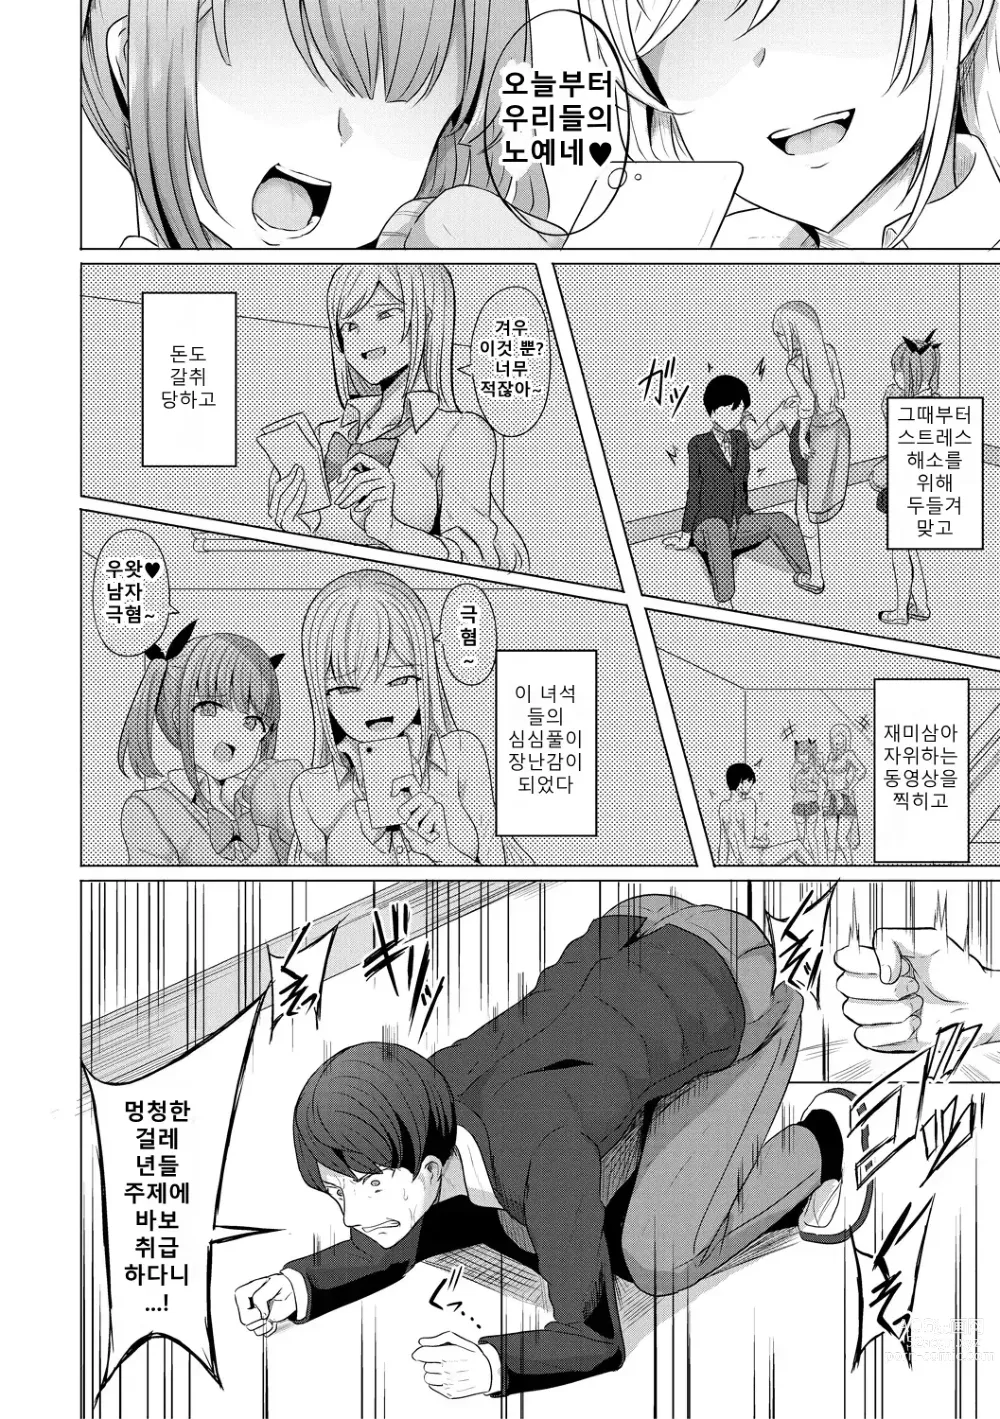 Page 4 of manga 최면복수 1화